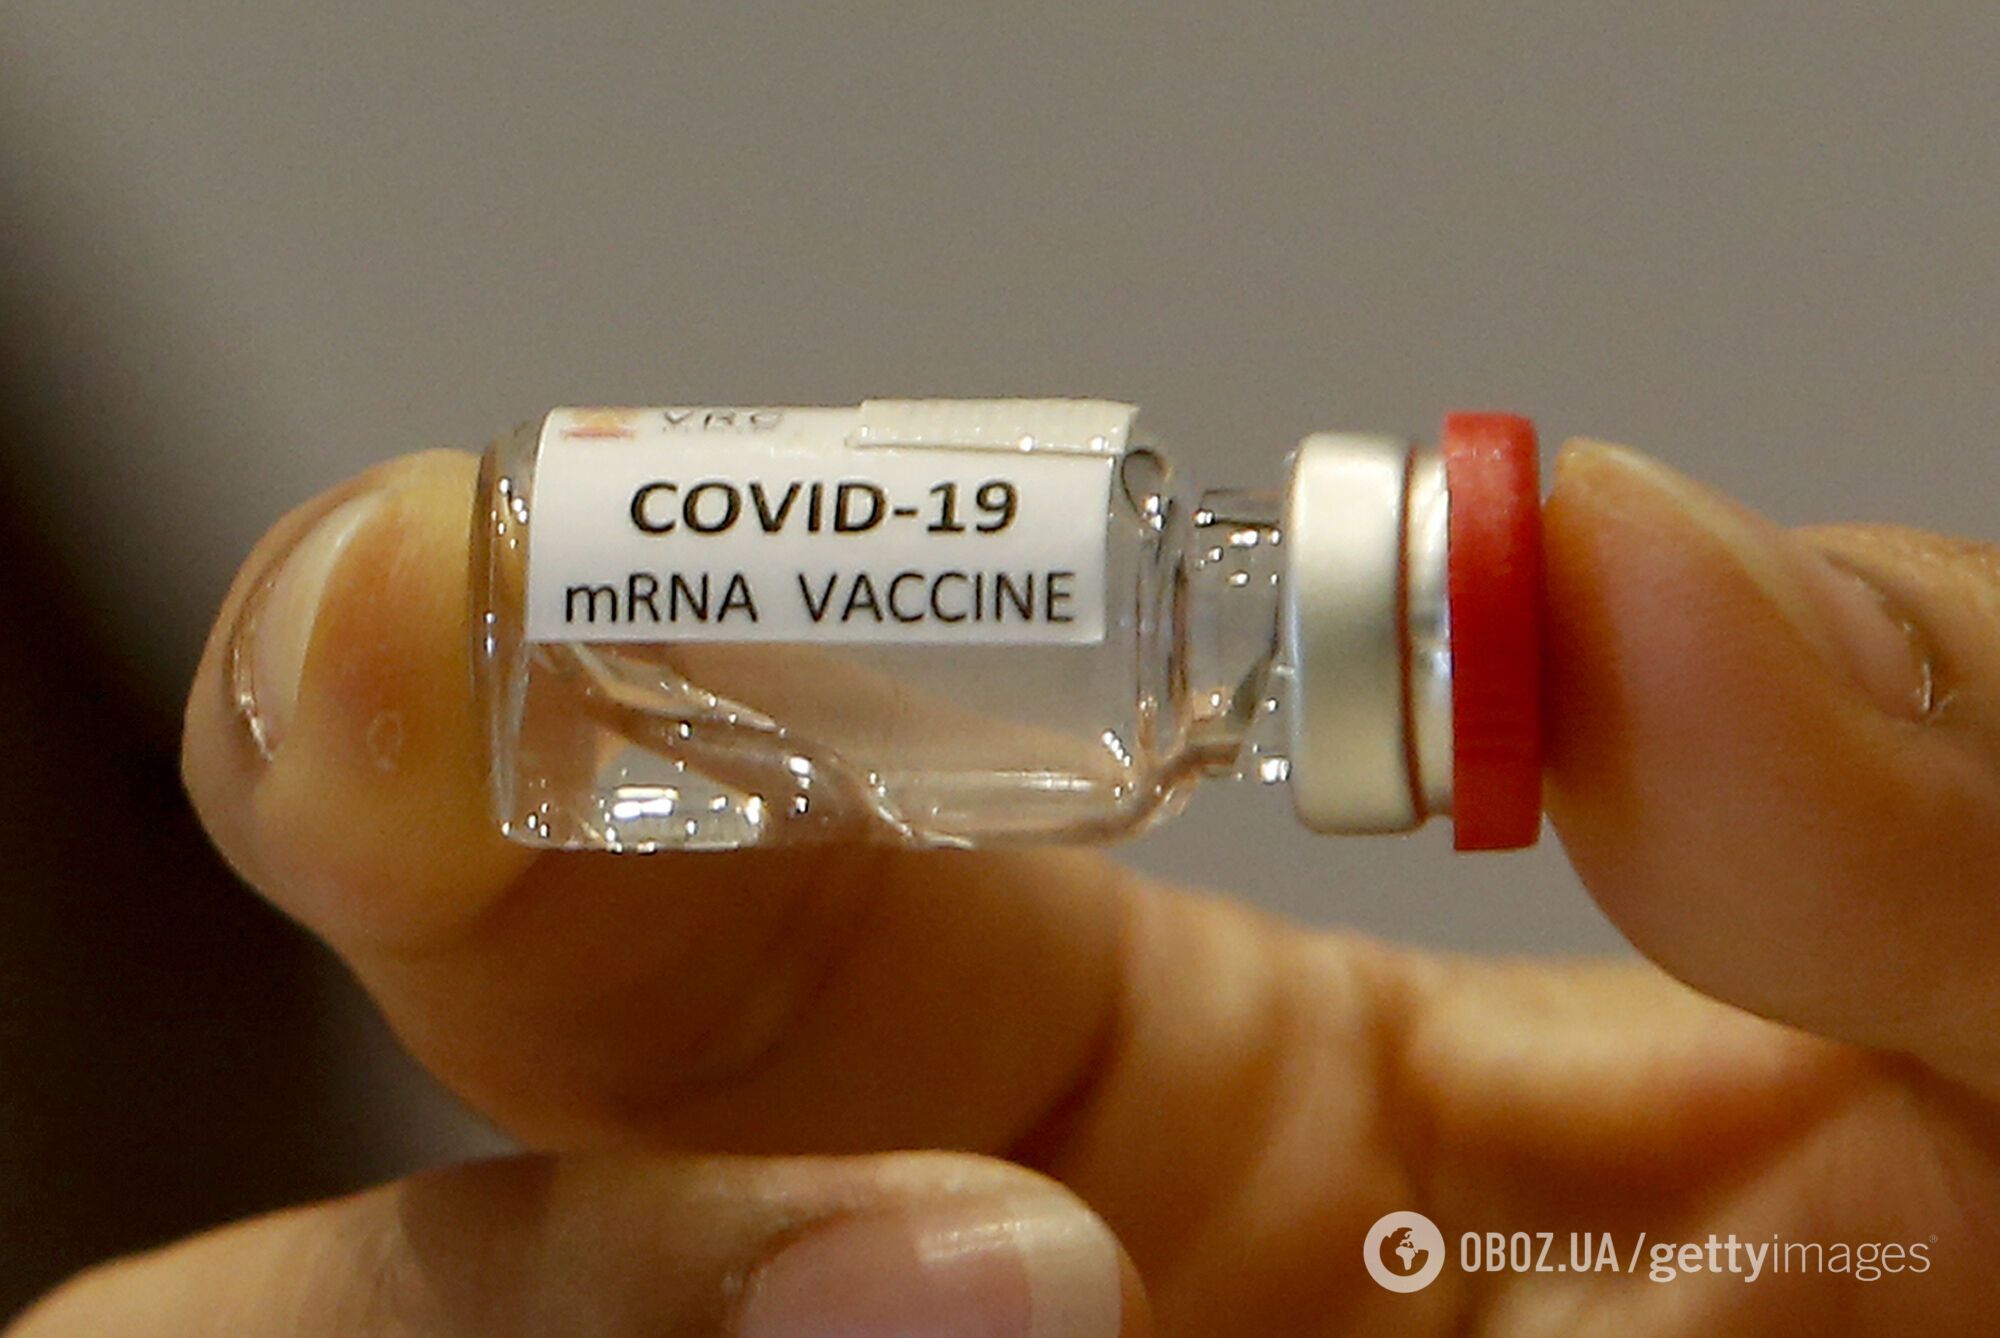 Вакцина от коронавируса индийского производства заслуживает доверия.